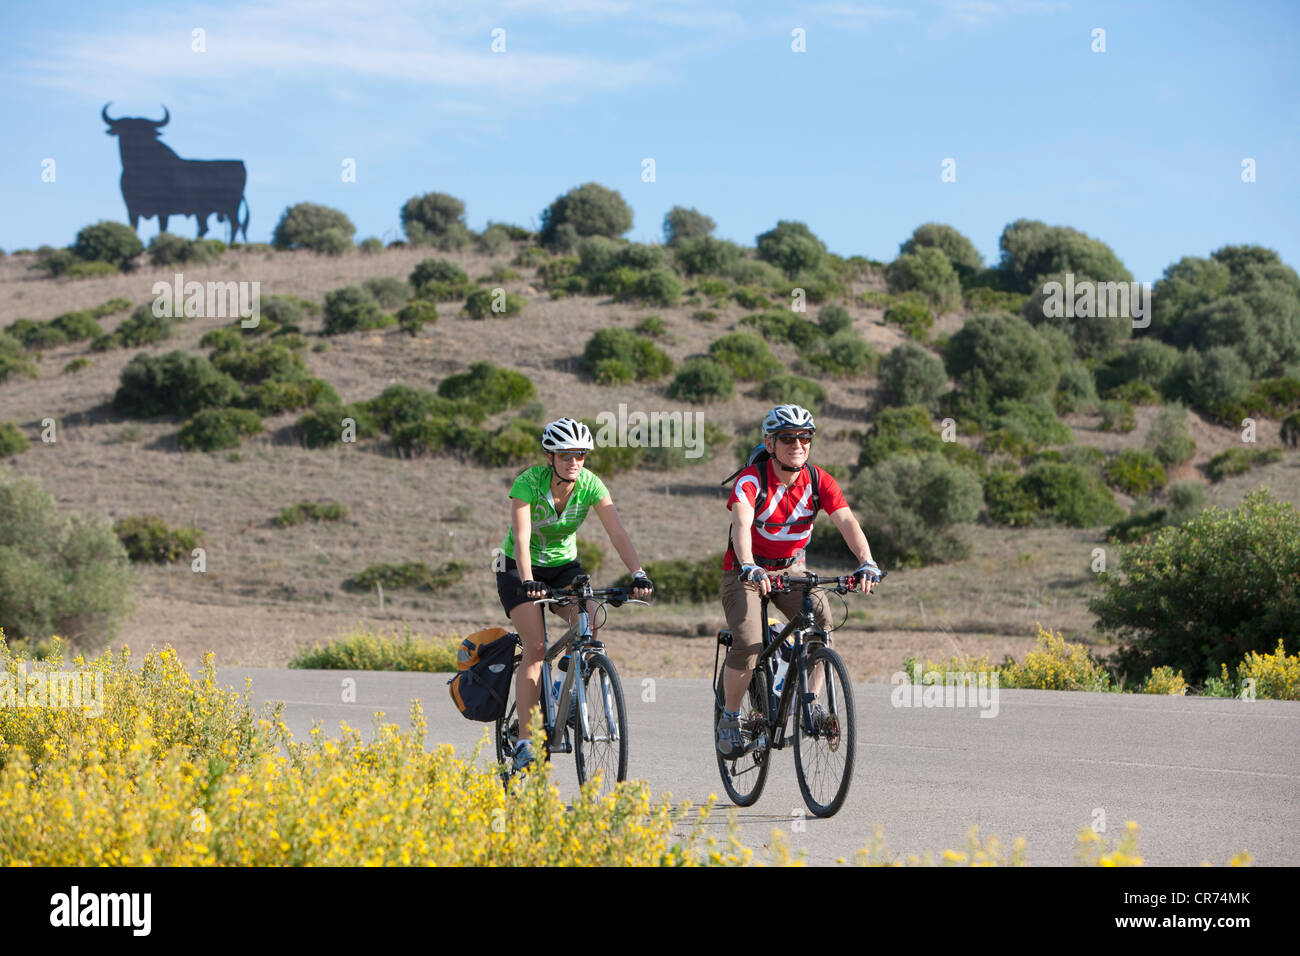 Spanien, Andalusien, Mann und Frau Reiten Fahrrad mit Stier-Statue im Hintergrund Stockfoto